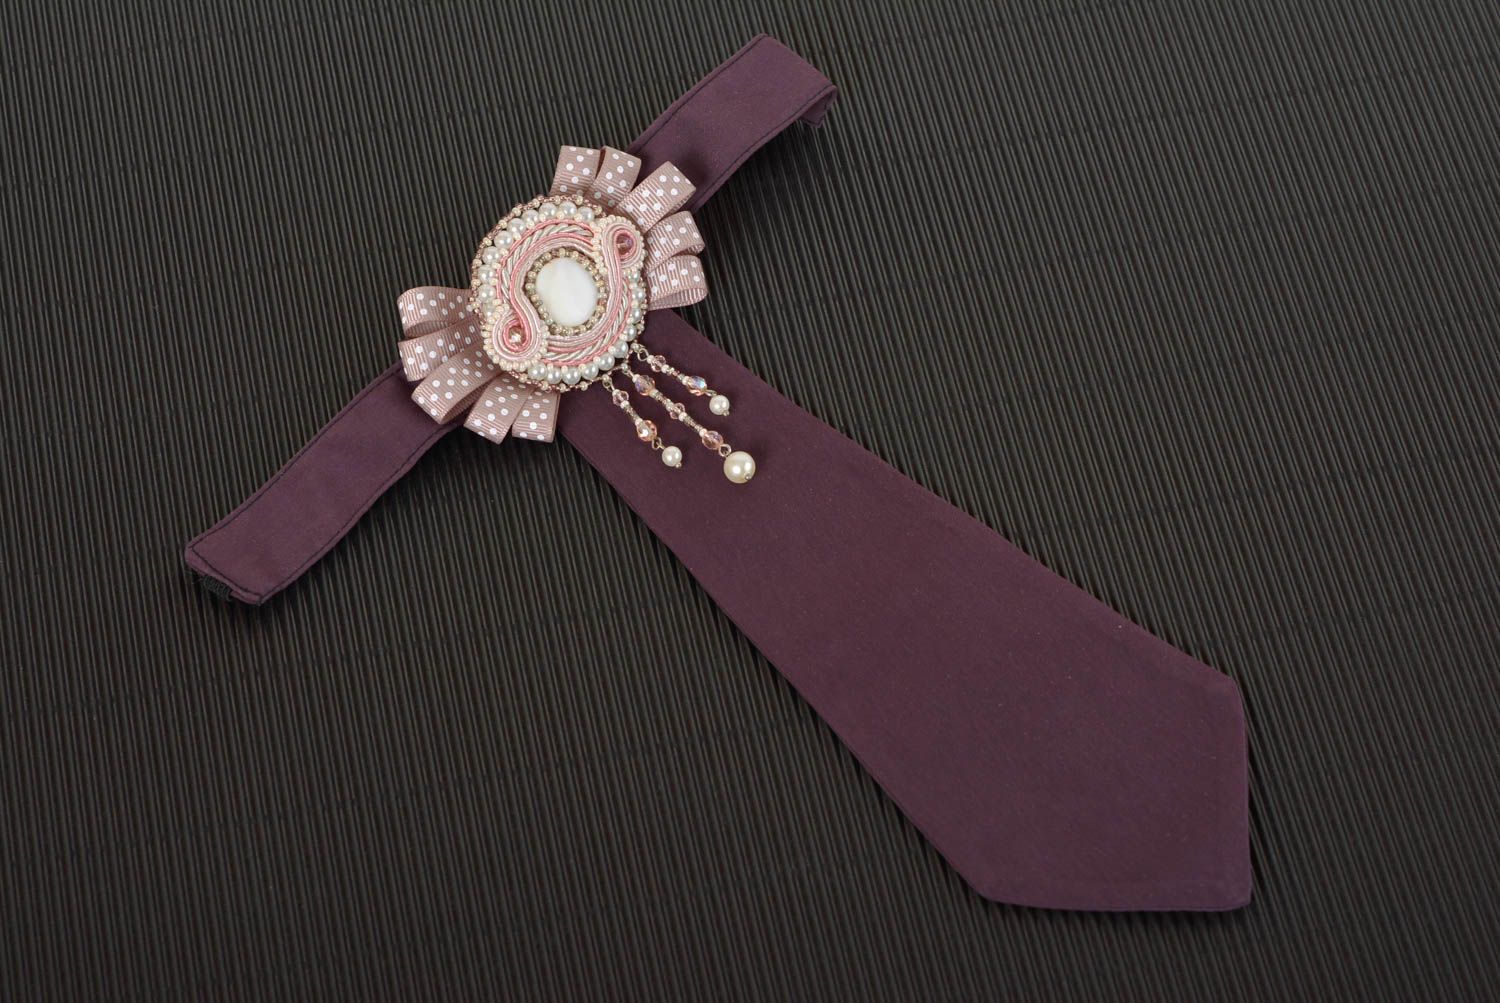 Сутажное украшение галстук ручной работы женский галстук из шелка с хрусталем фото 1